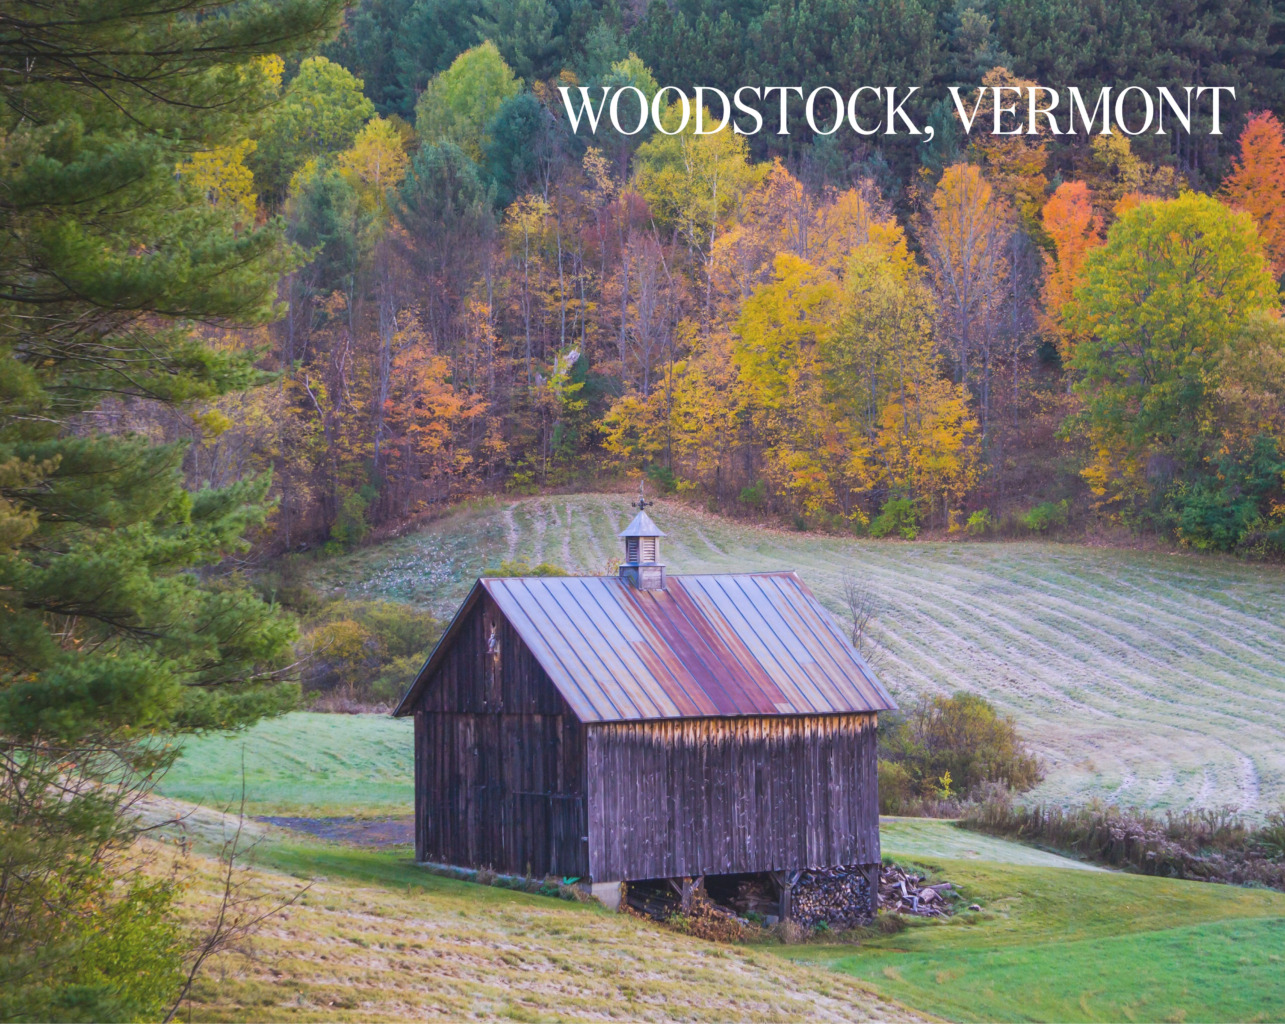 Woodstock, Vermont